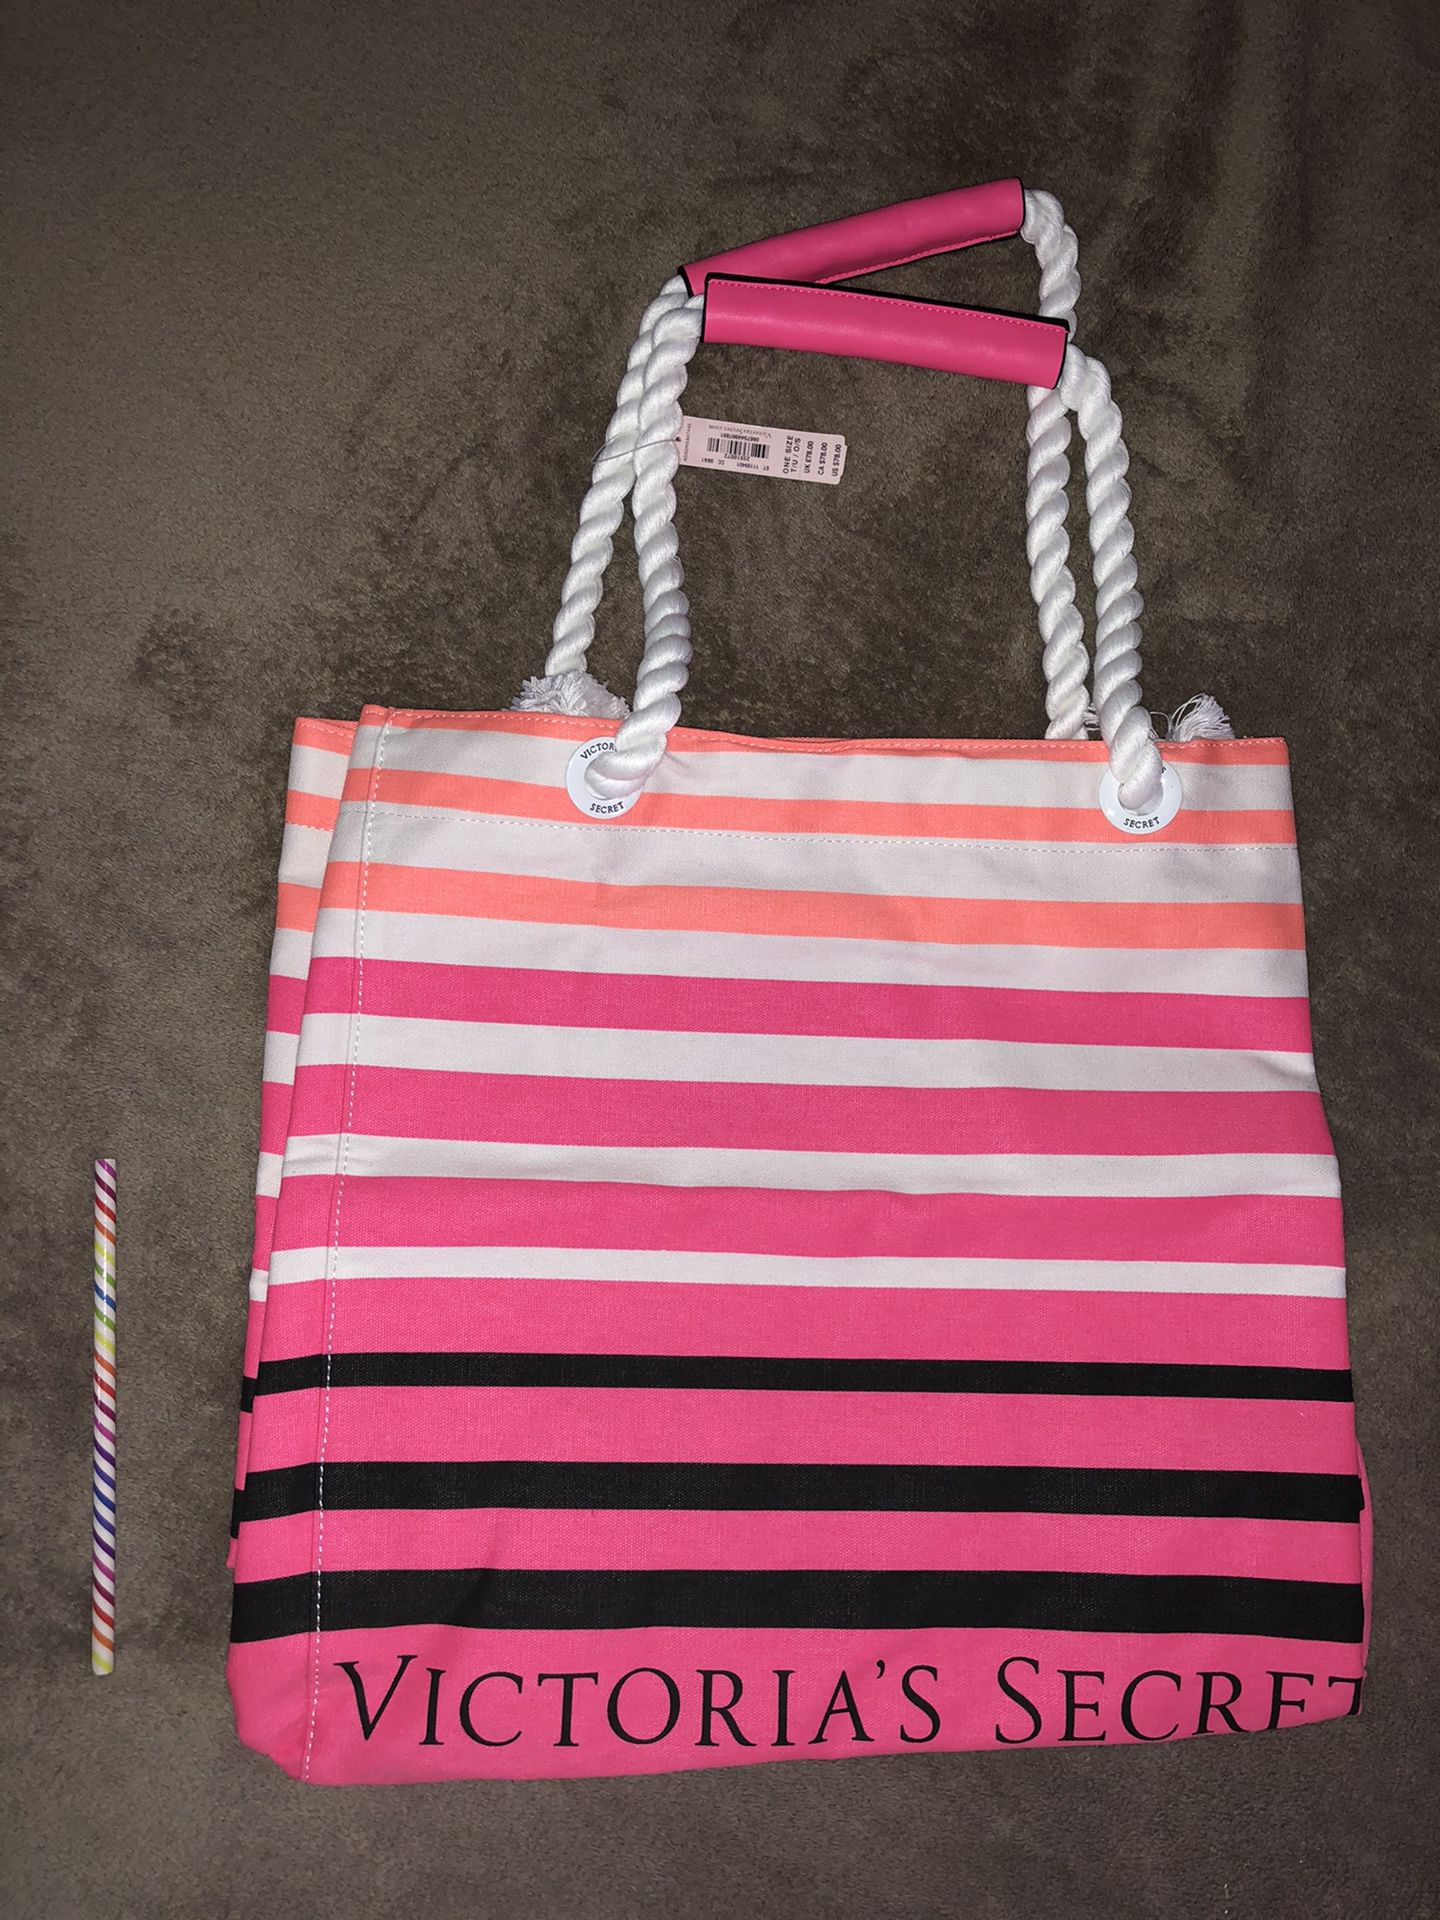 NEW!! Victoria’s Secret striped pink black tote